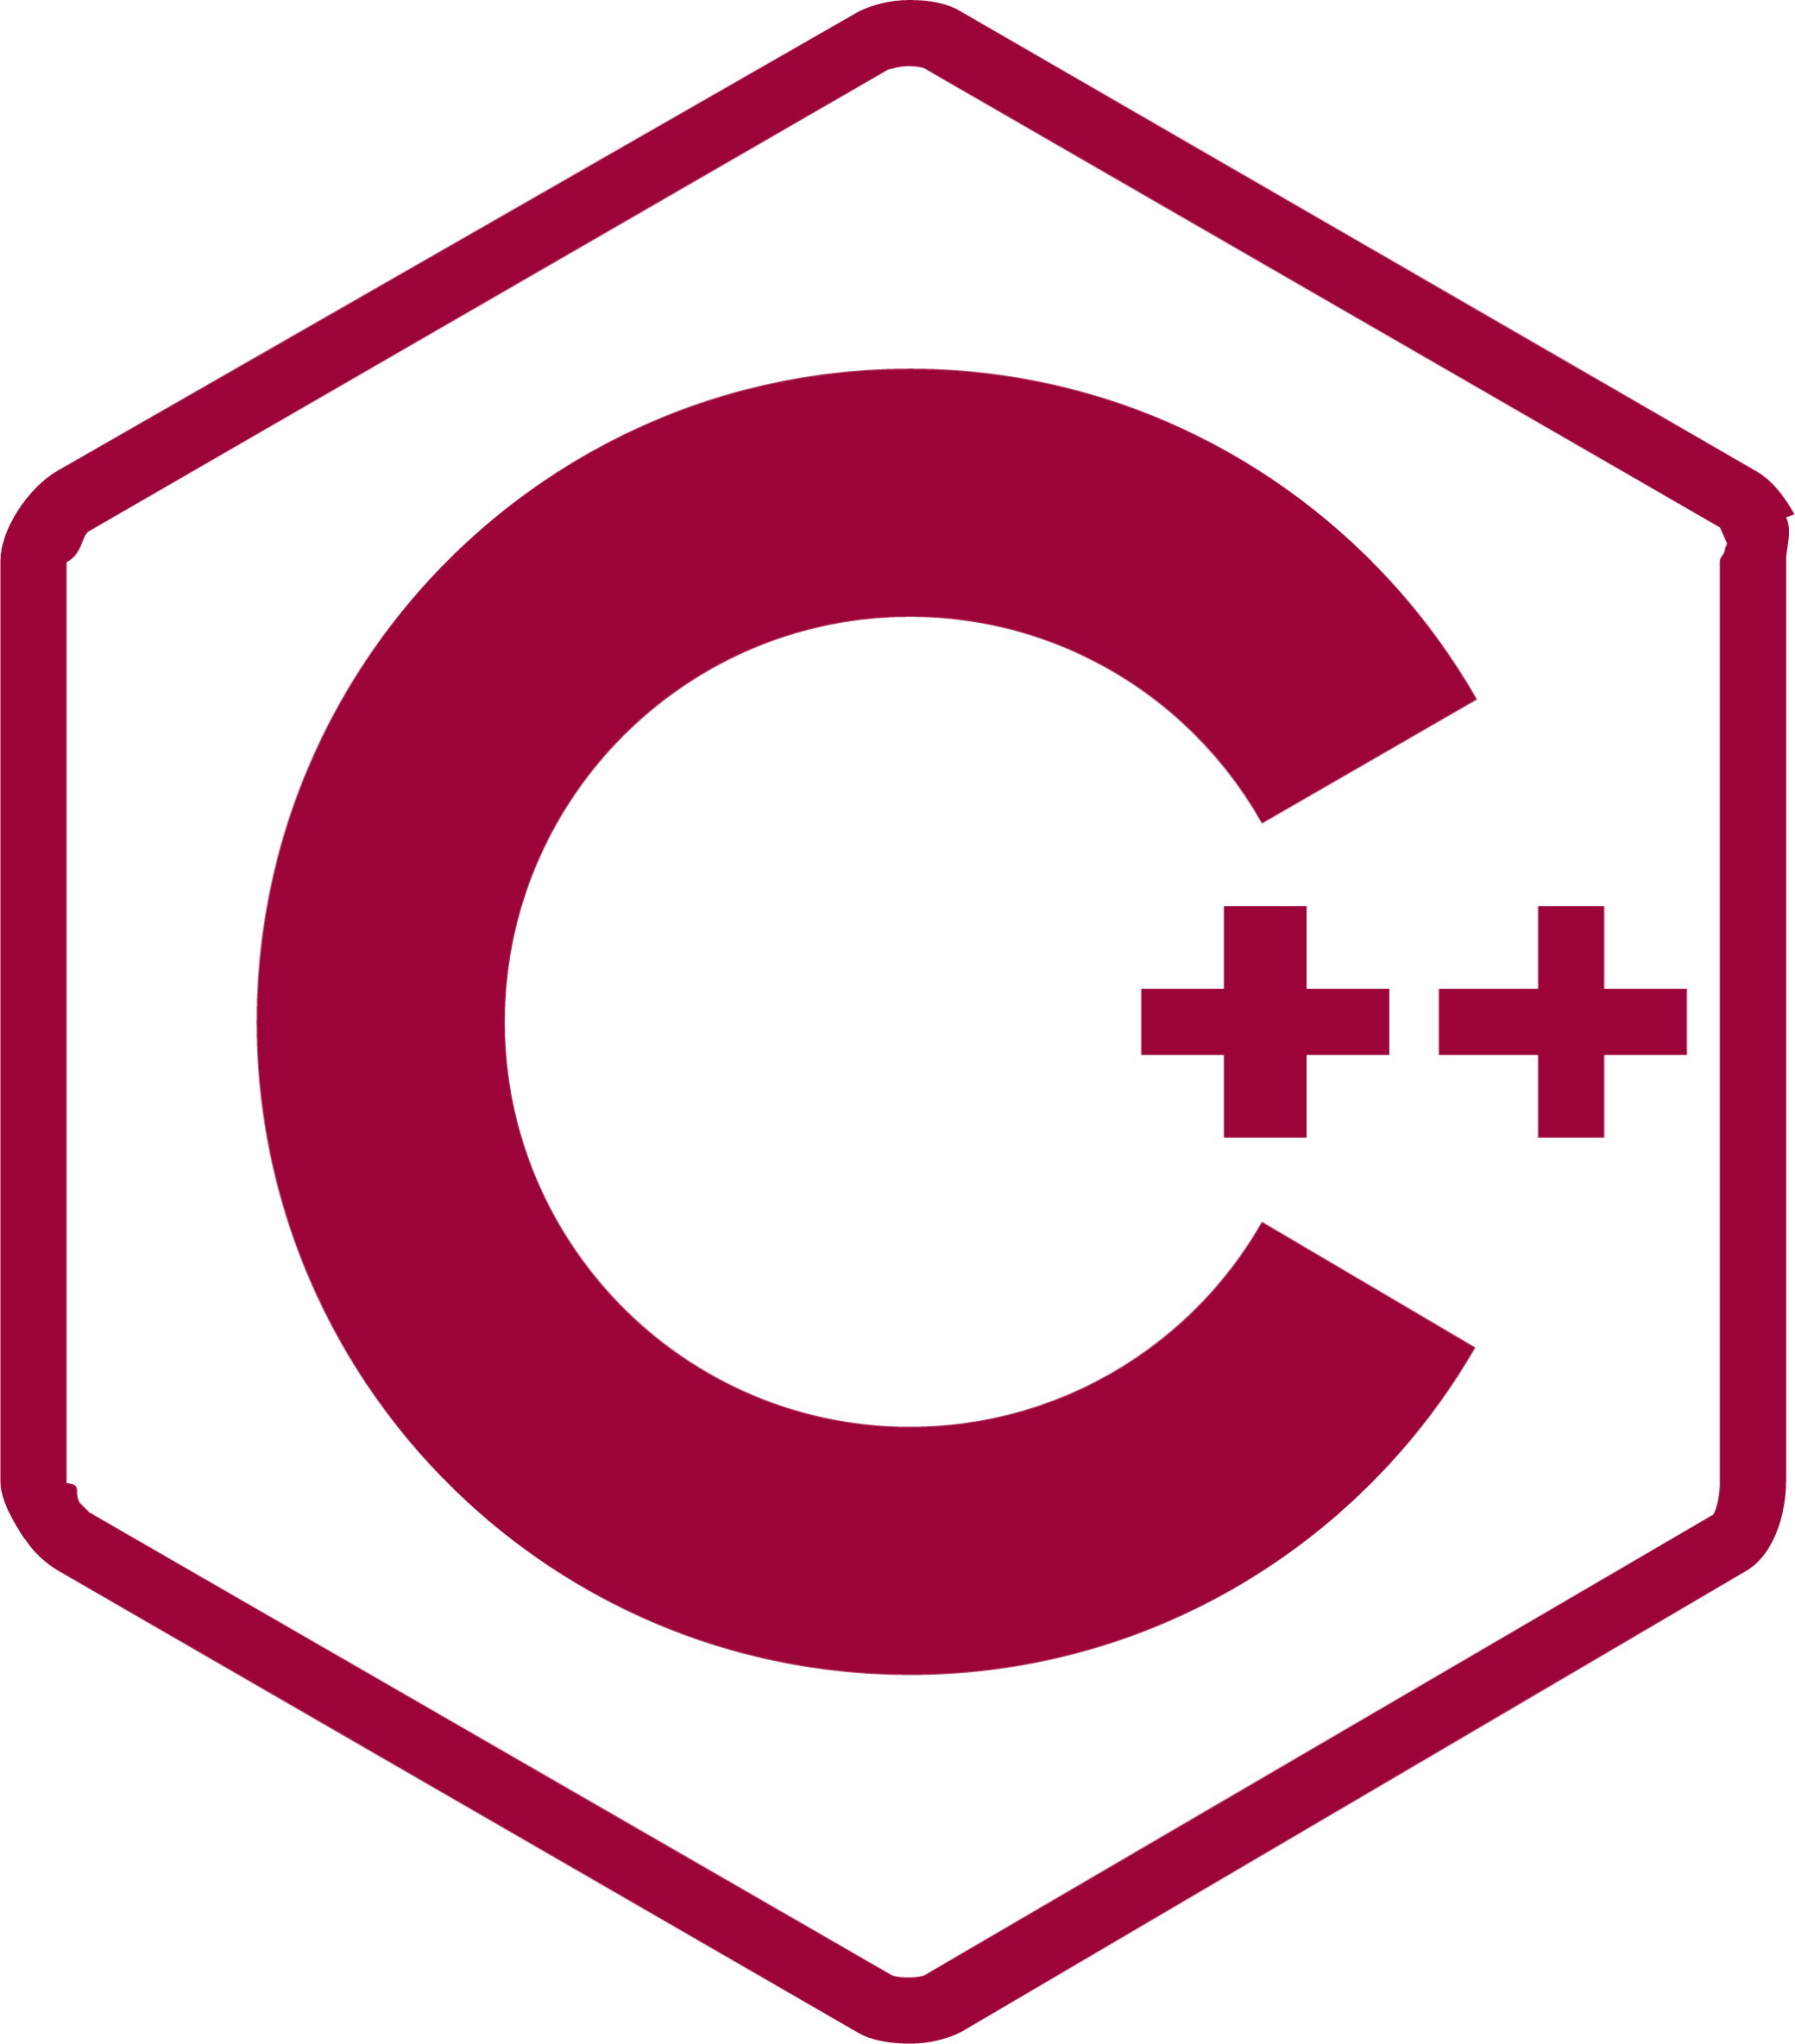 cplusplus line icon